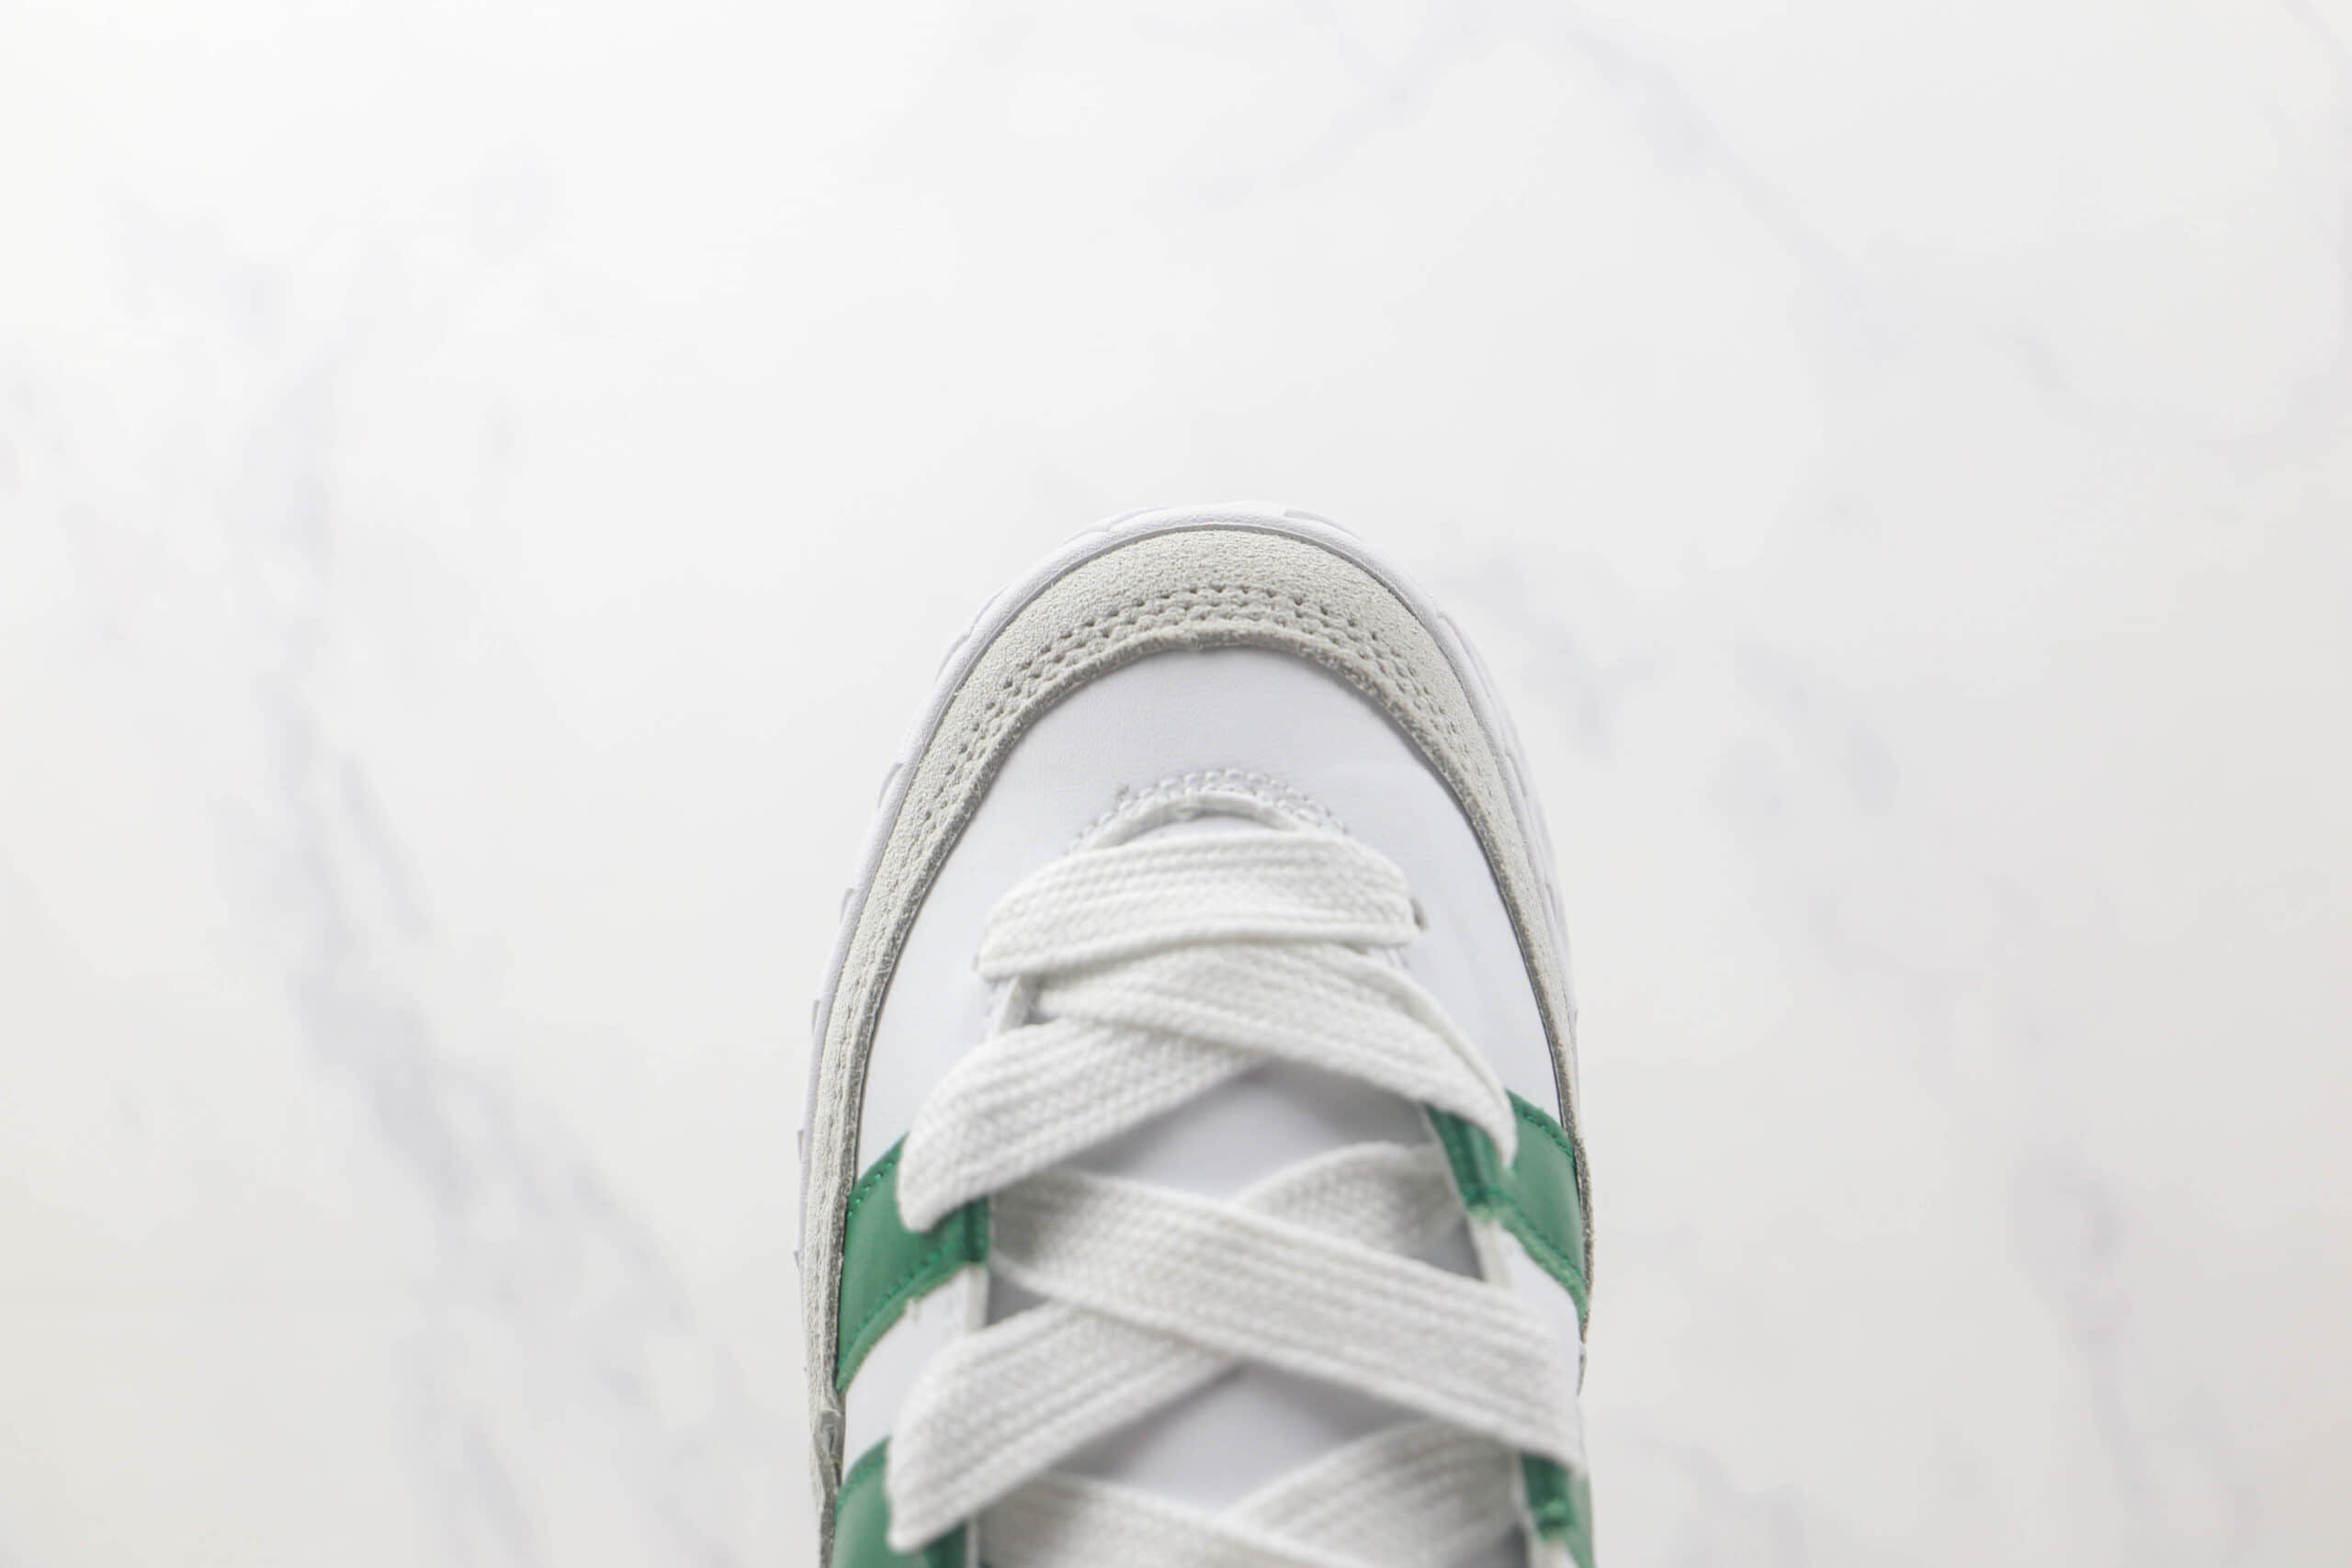 阿迪达斯Adidas ADIMATIC纯原版本低帮白绿色复古板鞋 阿迪达斯三叶草麂皮板鞋 货号：DB2912